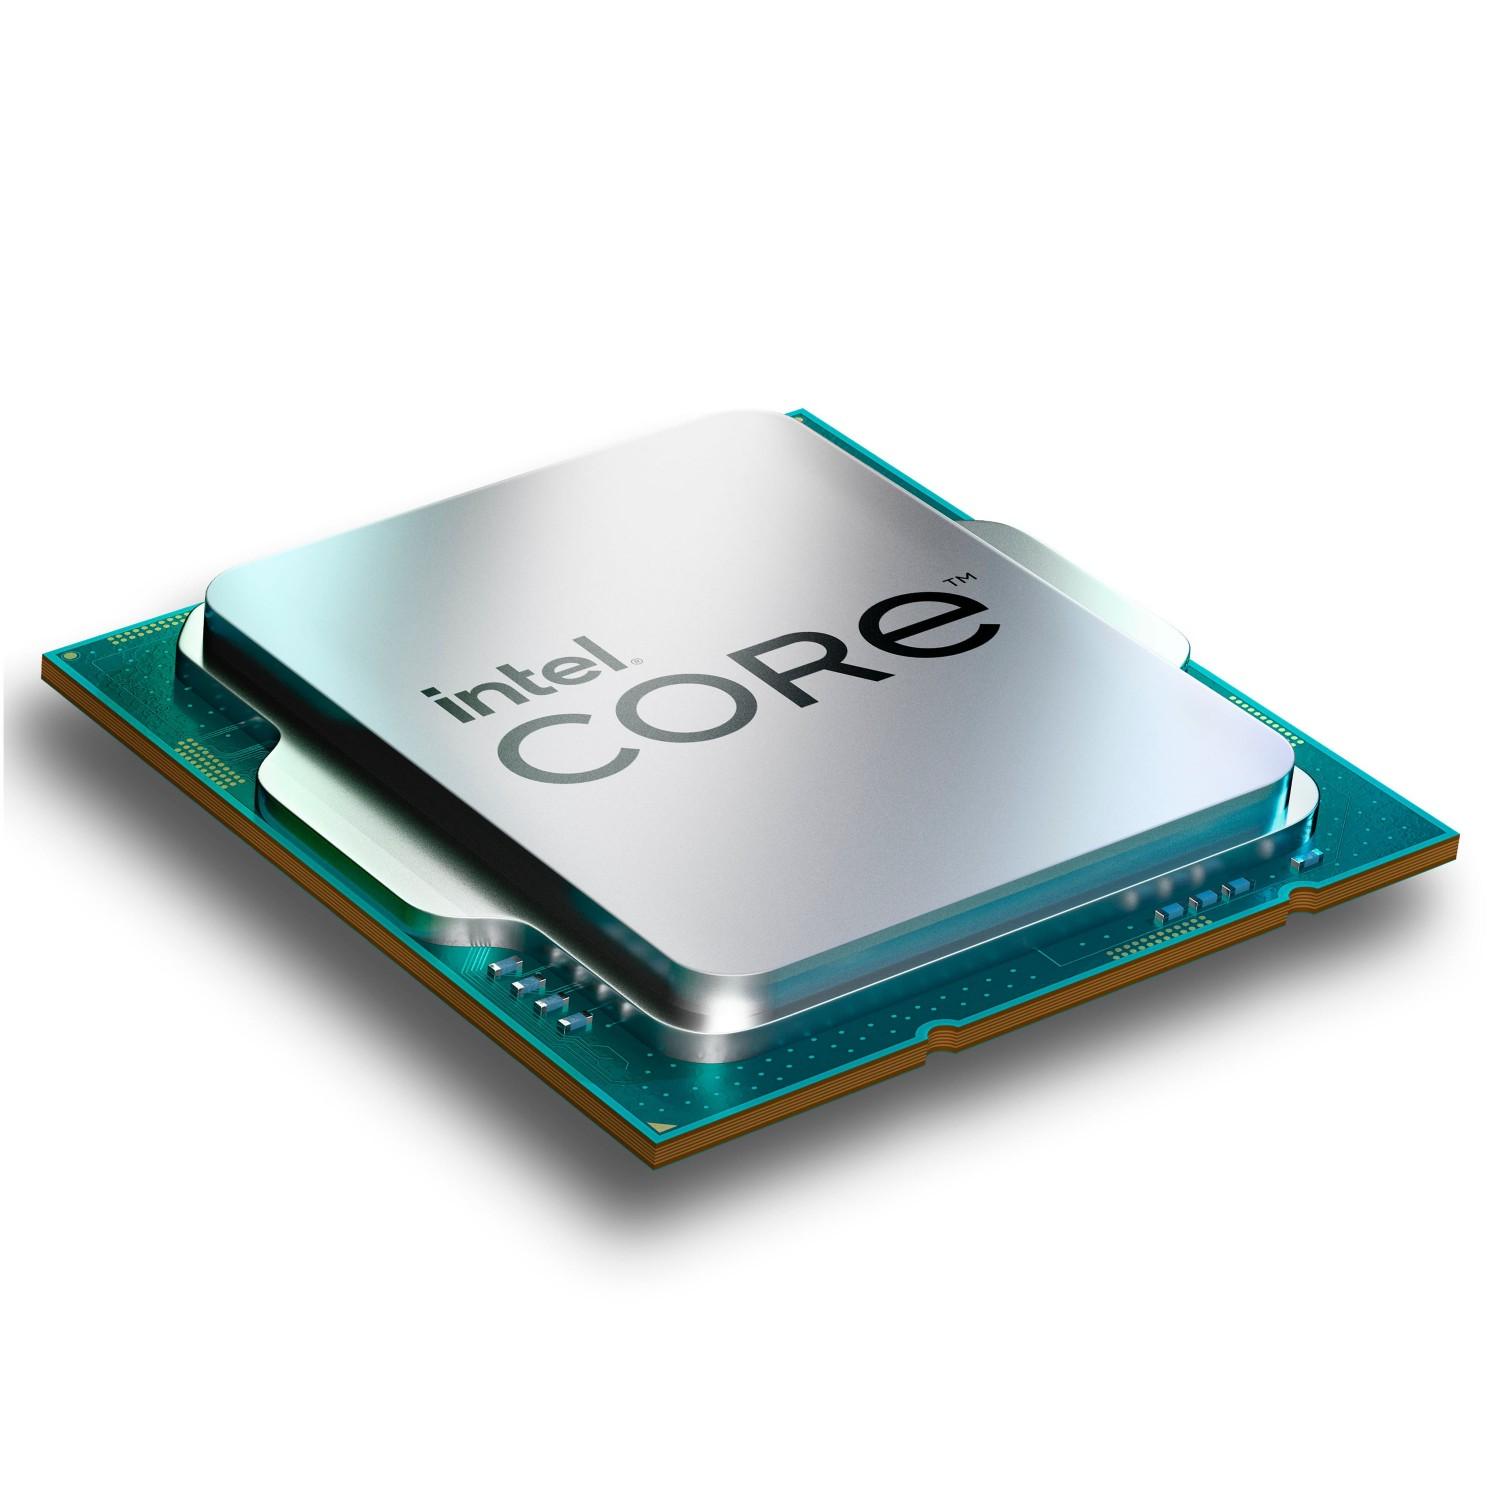 Intel Core i5 13600K Tray